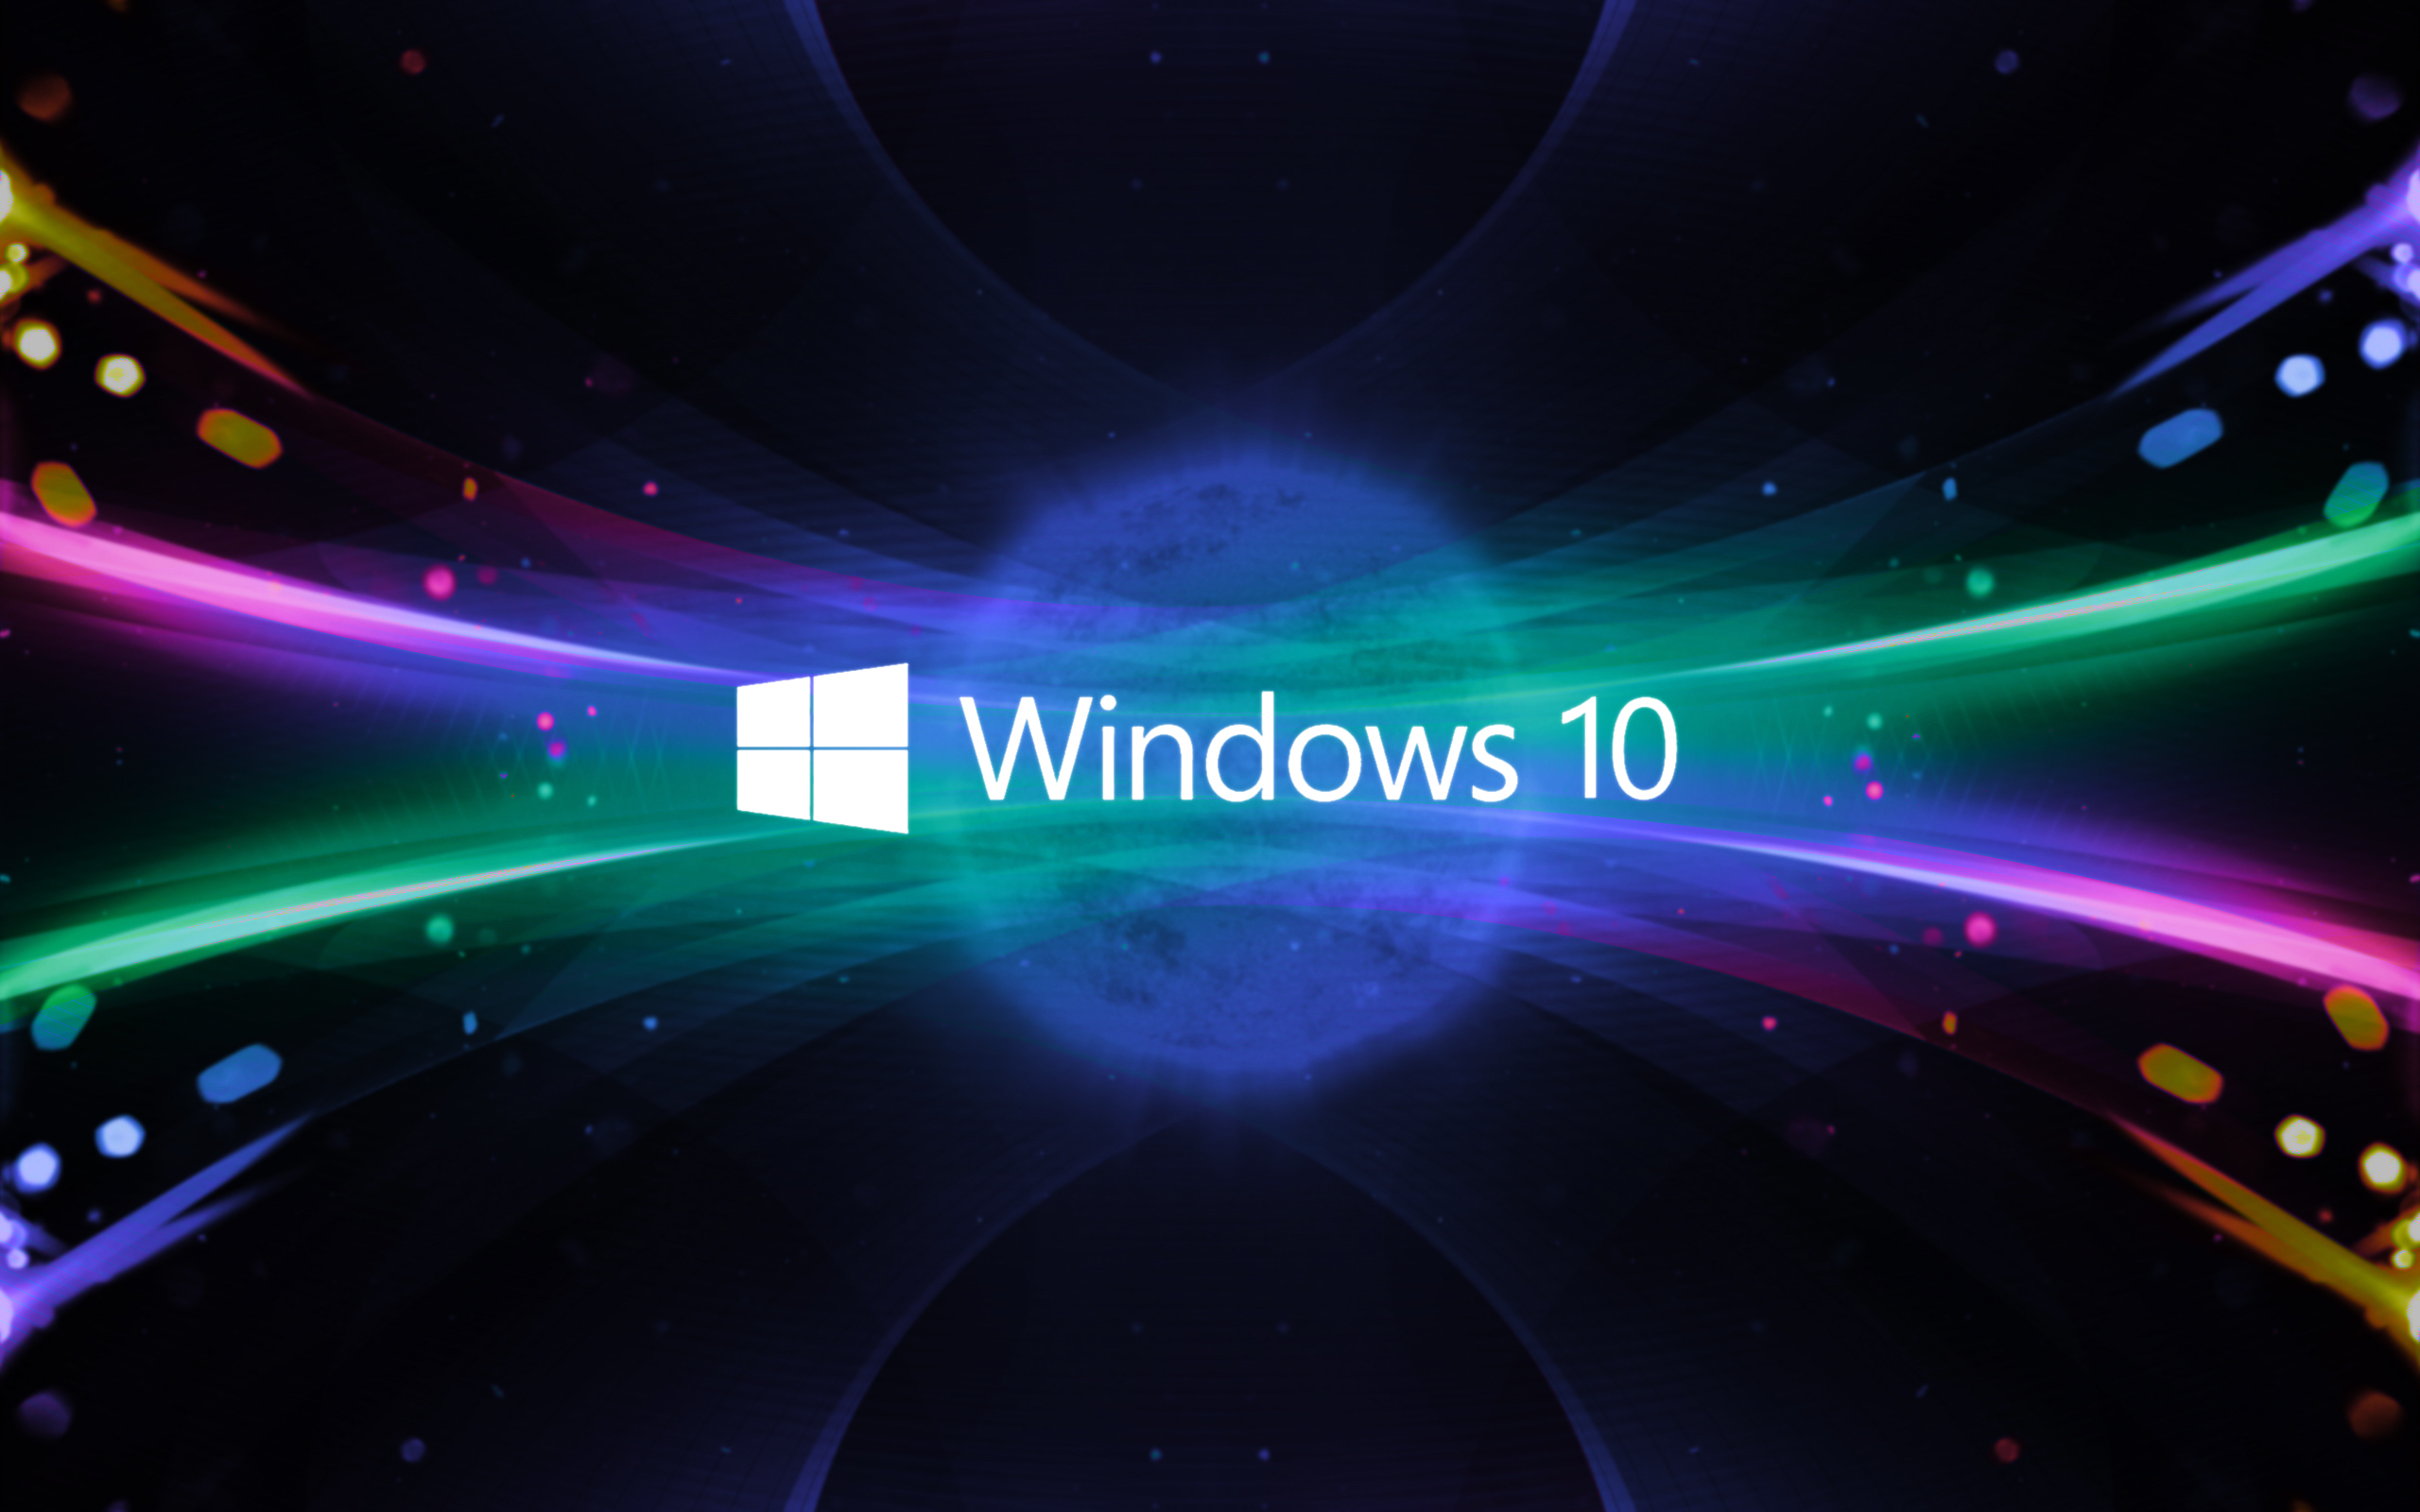 Windows 10 đang là một trong những hệ điều hành được sử dụng nhiều nhất trên thế giới hiện nay. Nếu bạn là một trong những người thích sử dụng hệ điều hành này, thì việc xem bức ảnh liên quan đến nó sẽ giúp bạn hiểu rõ hơn về tính năng và cách sử dụng hệ điều hành này.